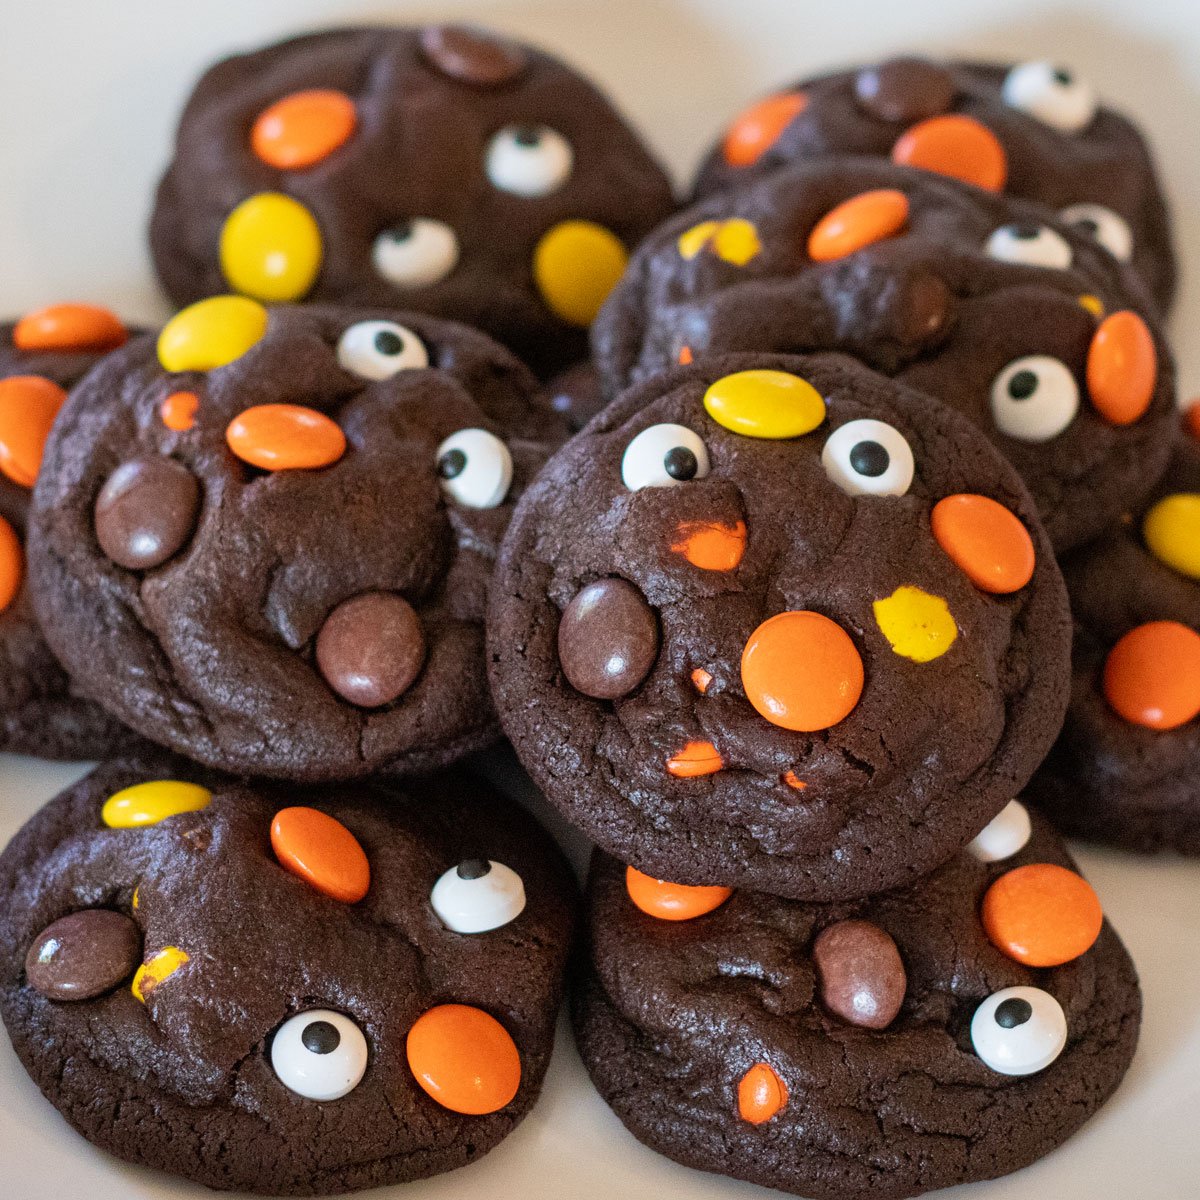 Imagen cuadrada de las galletas Reese's Pieces de chocolate de Halloween.